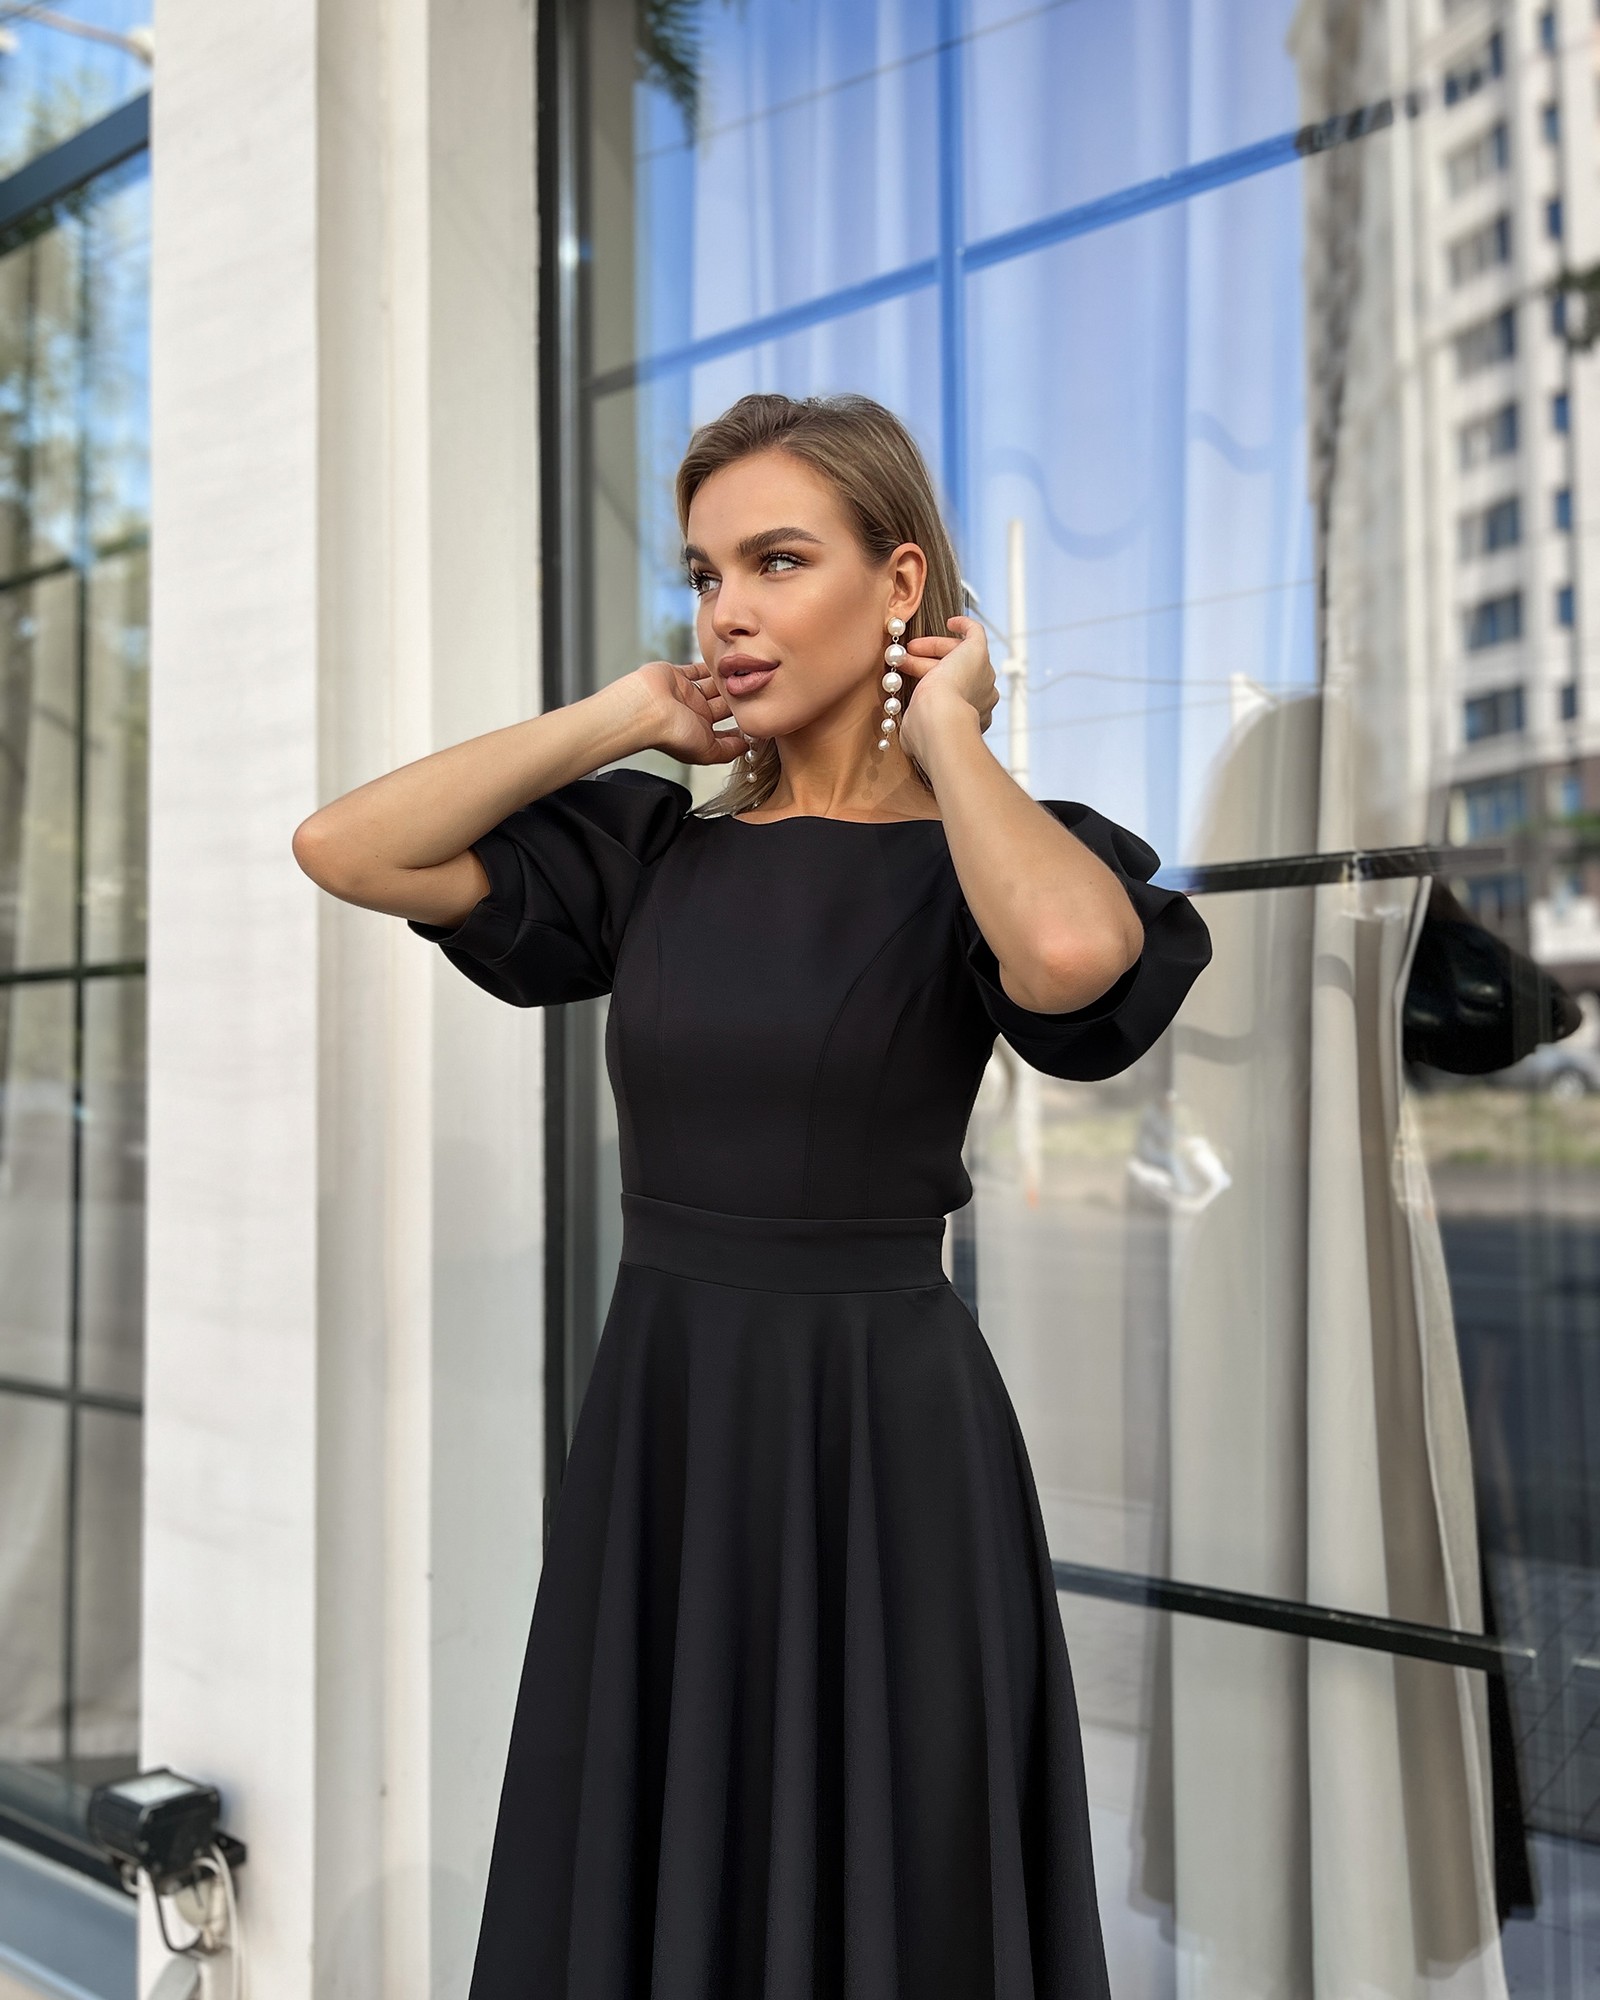 Black cocktail dress by Tanita-Romario